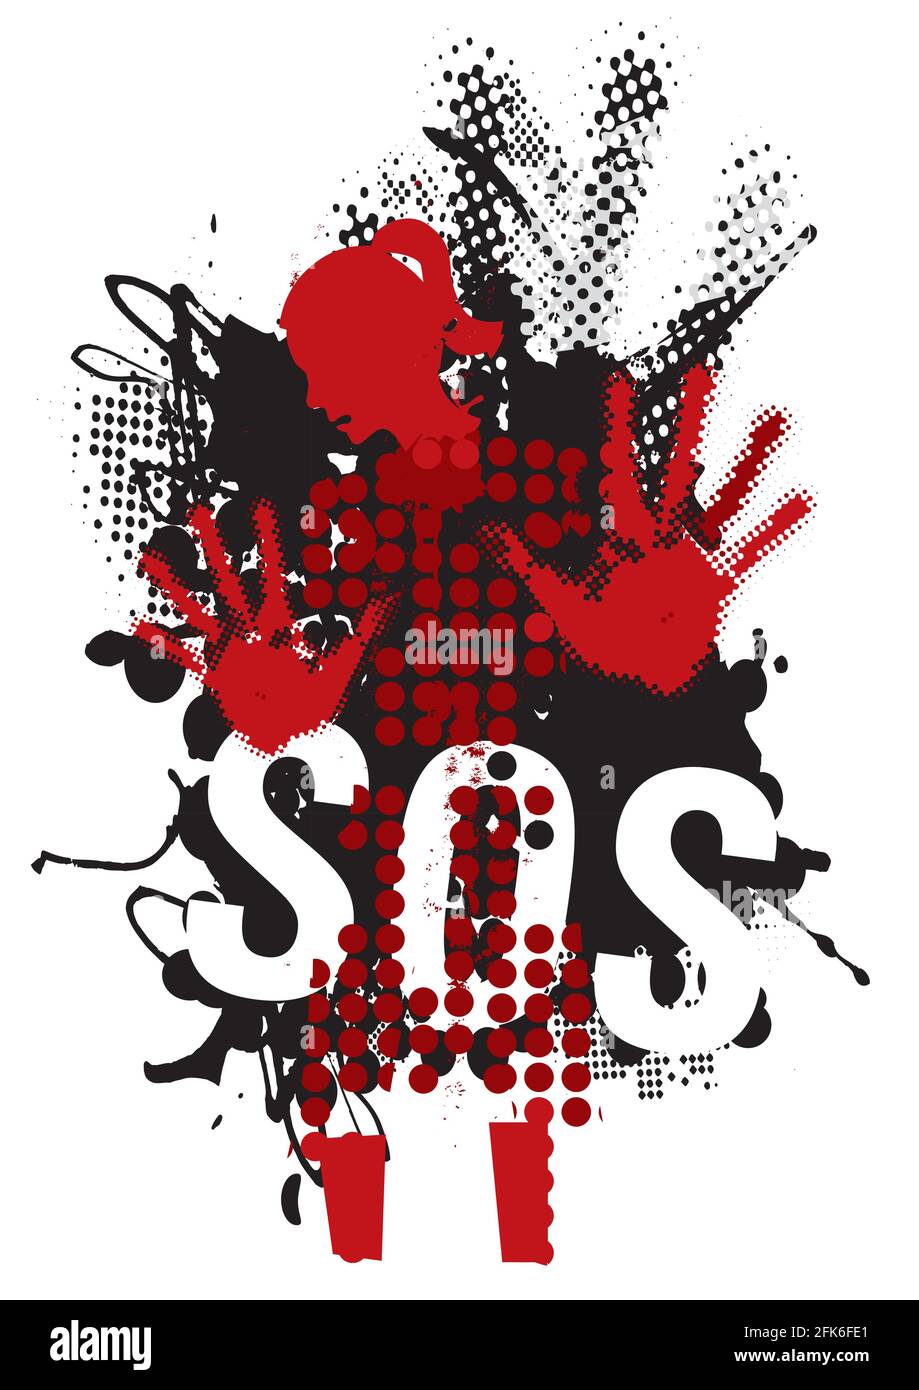 Donna giovane abusata, SOS violenza. Grunge silhouette stilizzata donna con braccia in posizione difensiva e iscrizione SOS. Vettore disponibile. Illustrazione Vettoriale